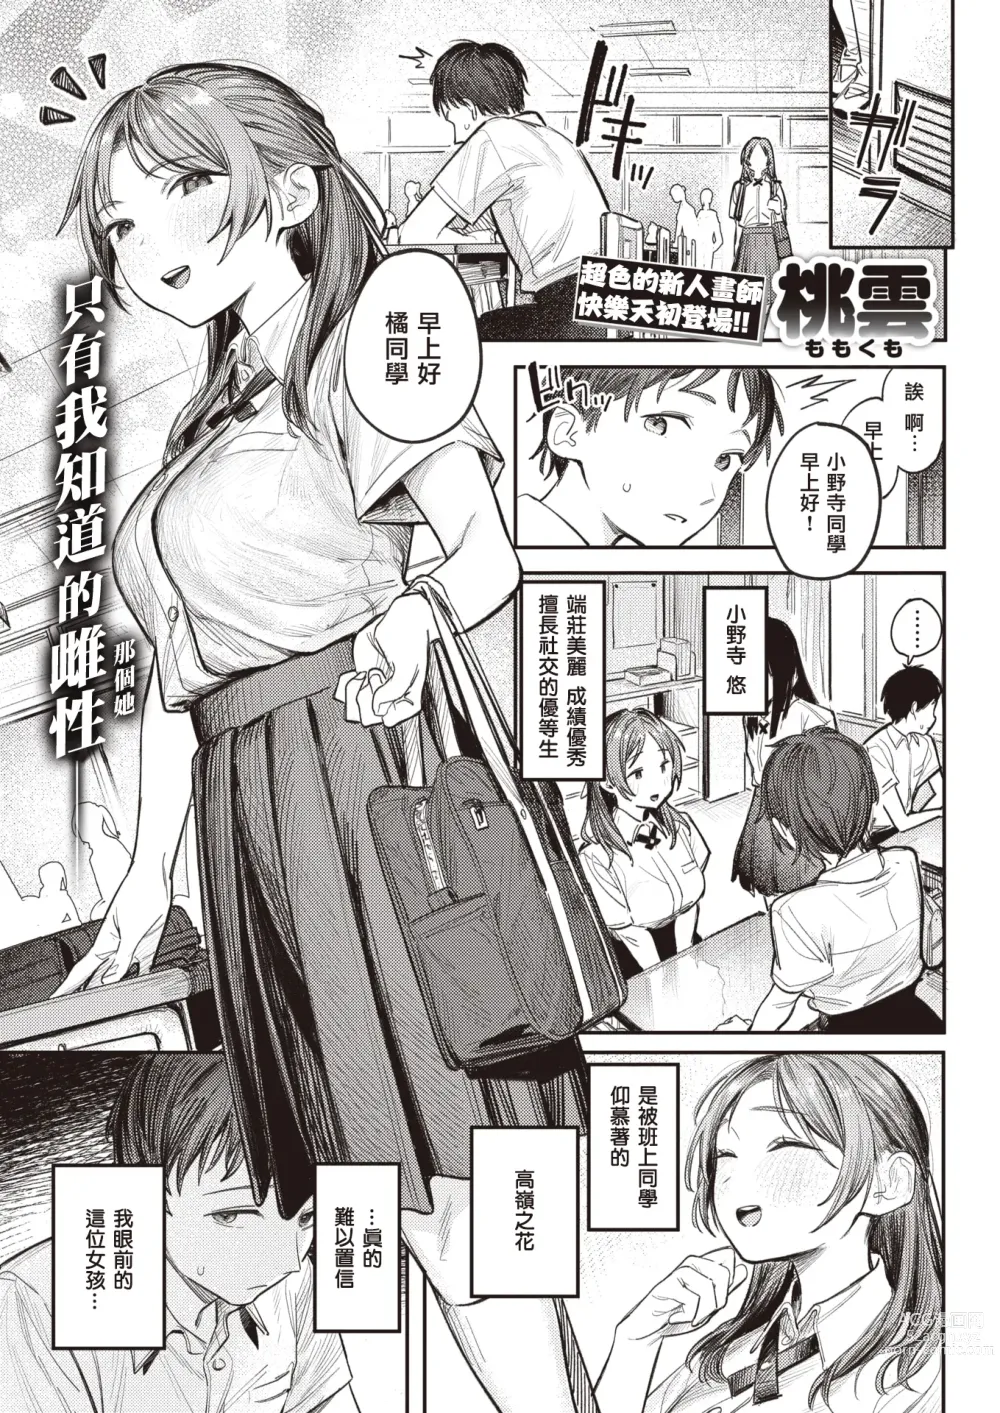 Page 2 of manga 想被窥见